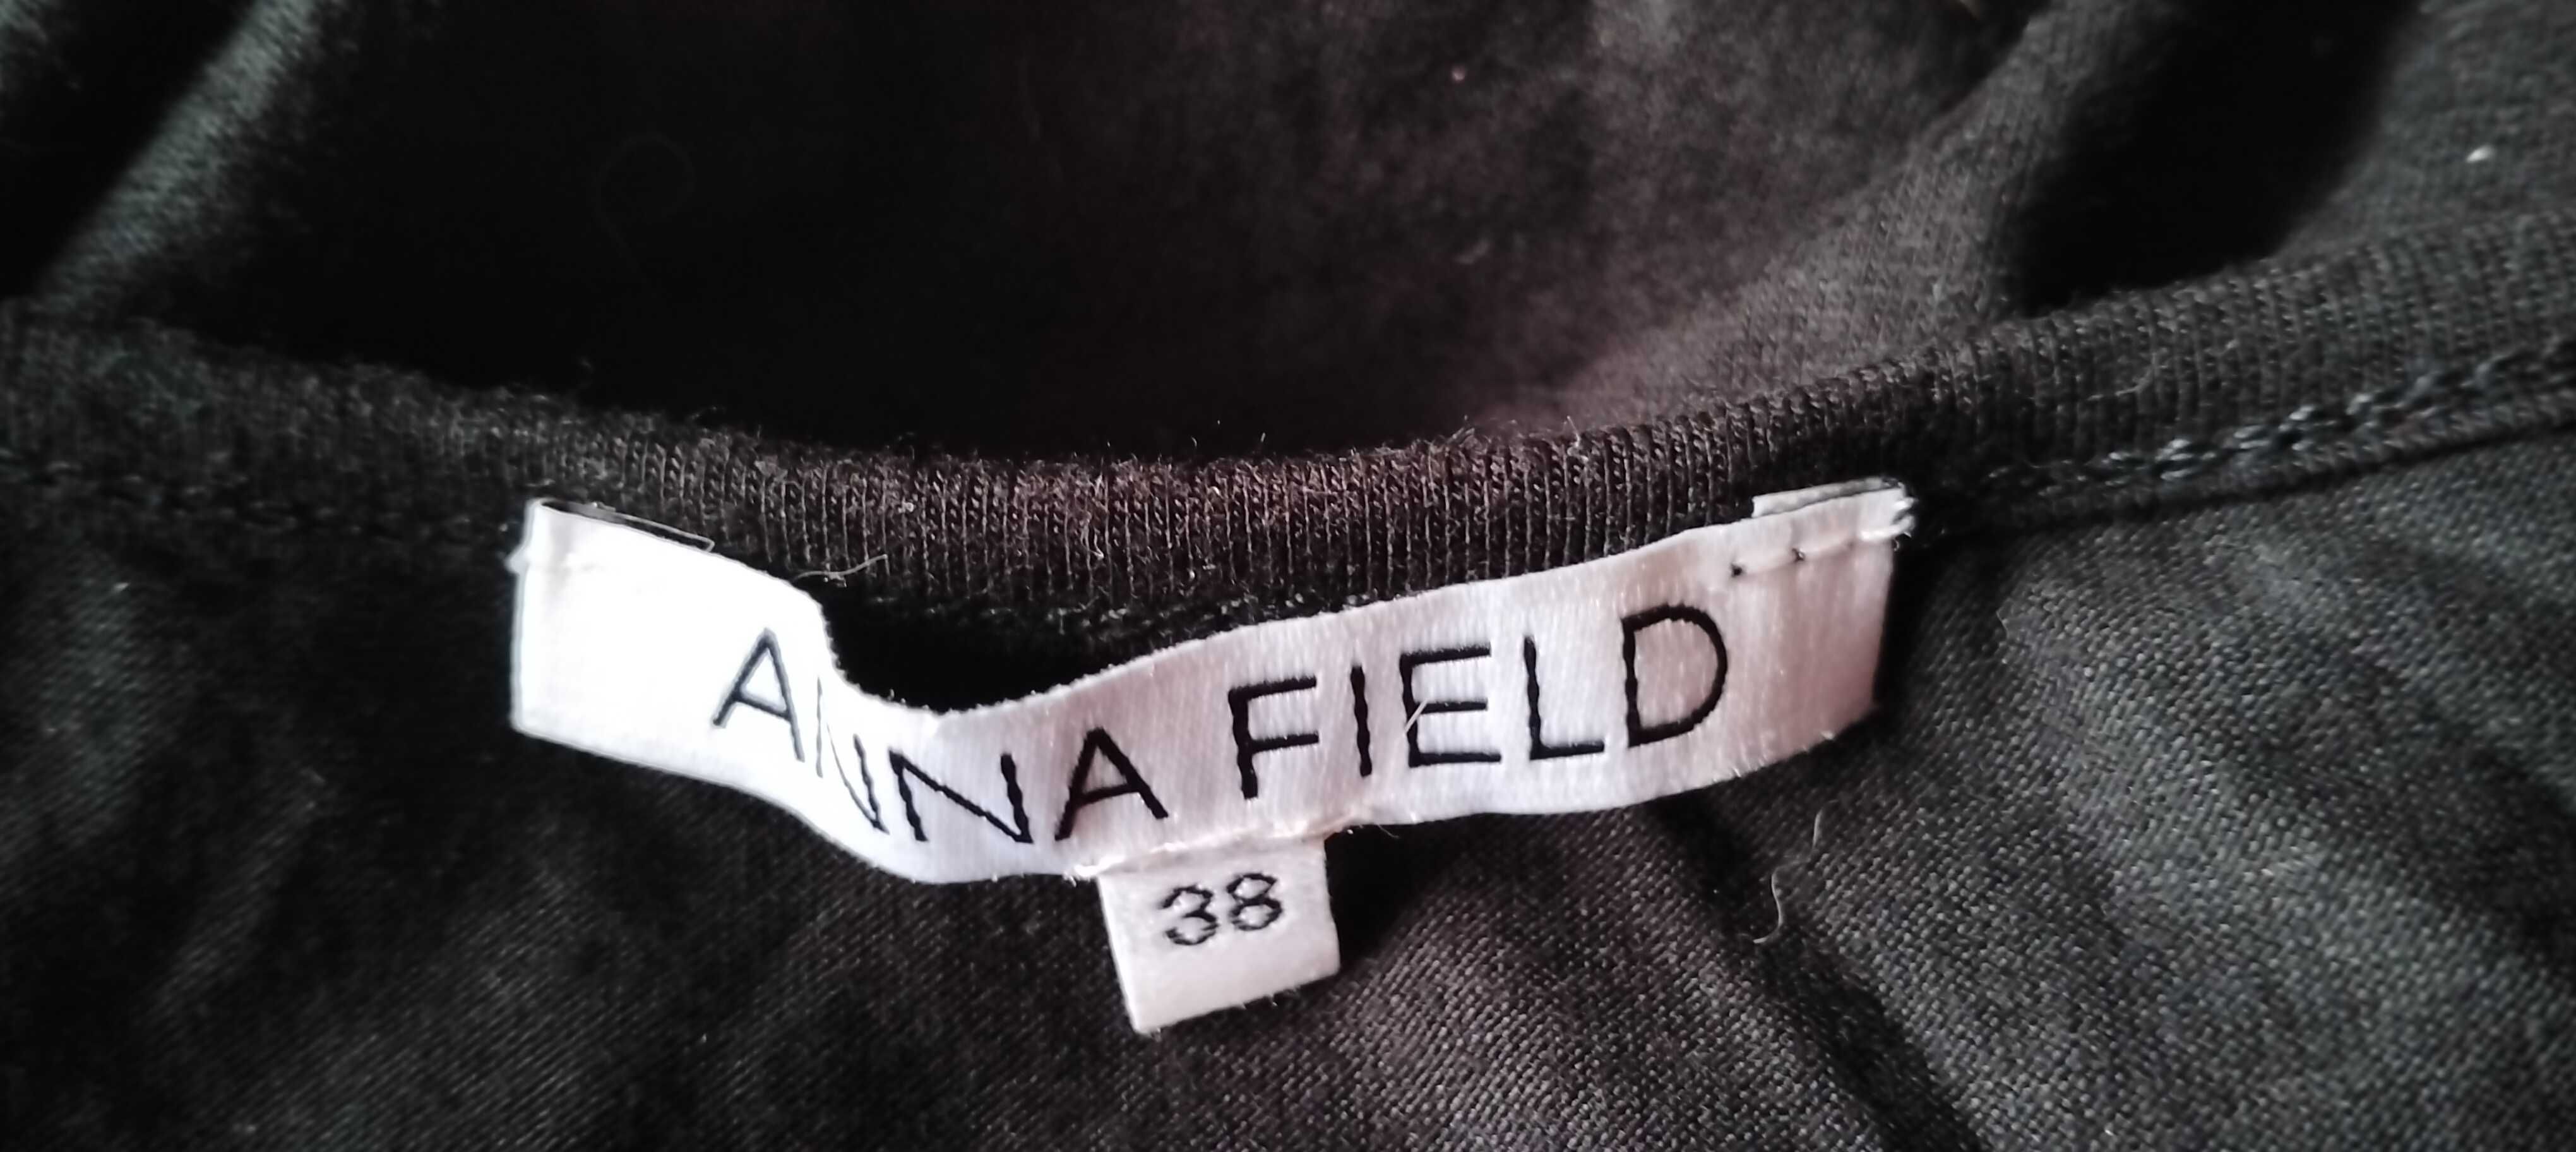 Anna Field Zalando 38 cekinowy przod